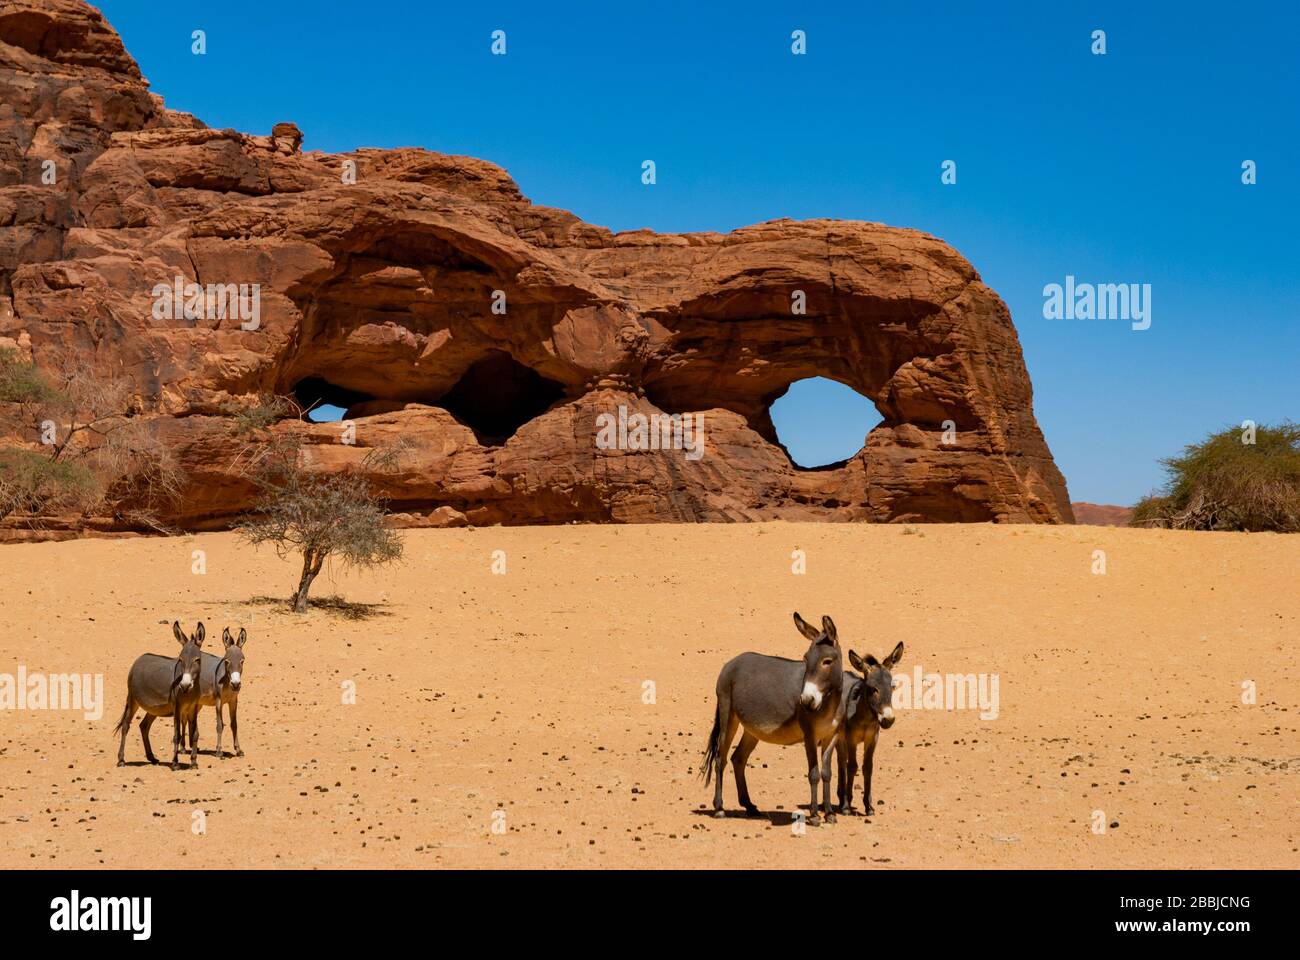 Formations rocheuses naturelles sous forme d'arches et de donkeys belvédère à la caméra. Tchad, Afrique Banque D'Images